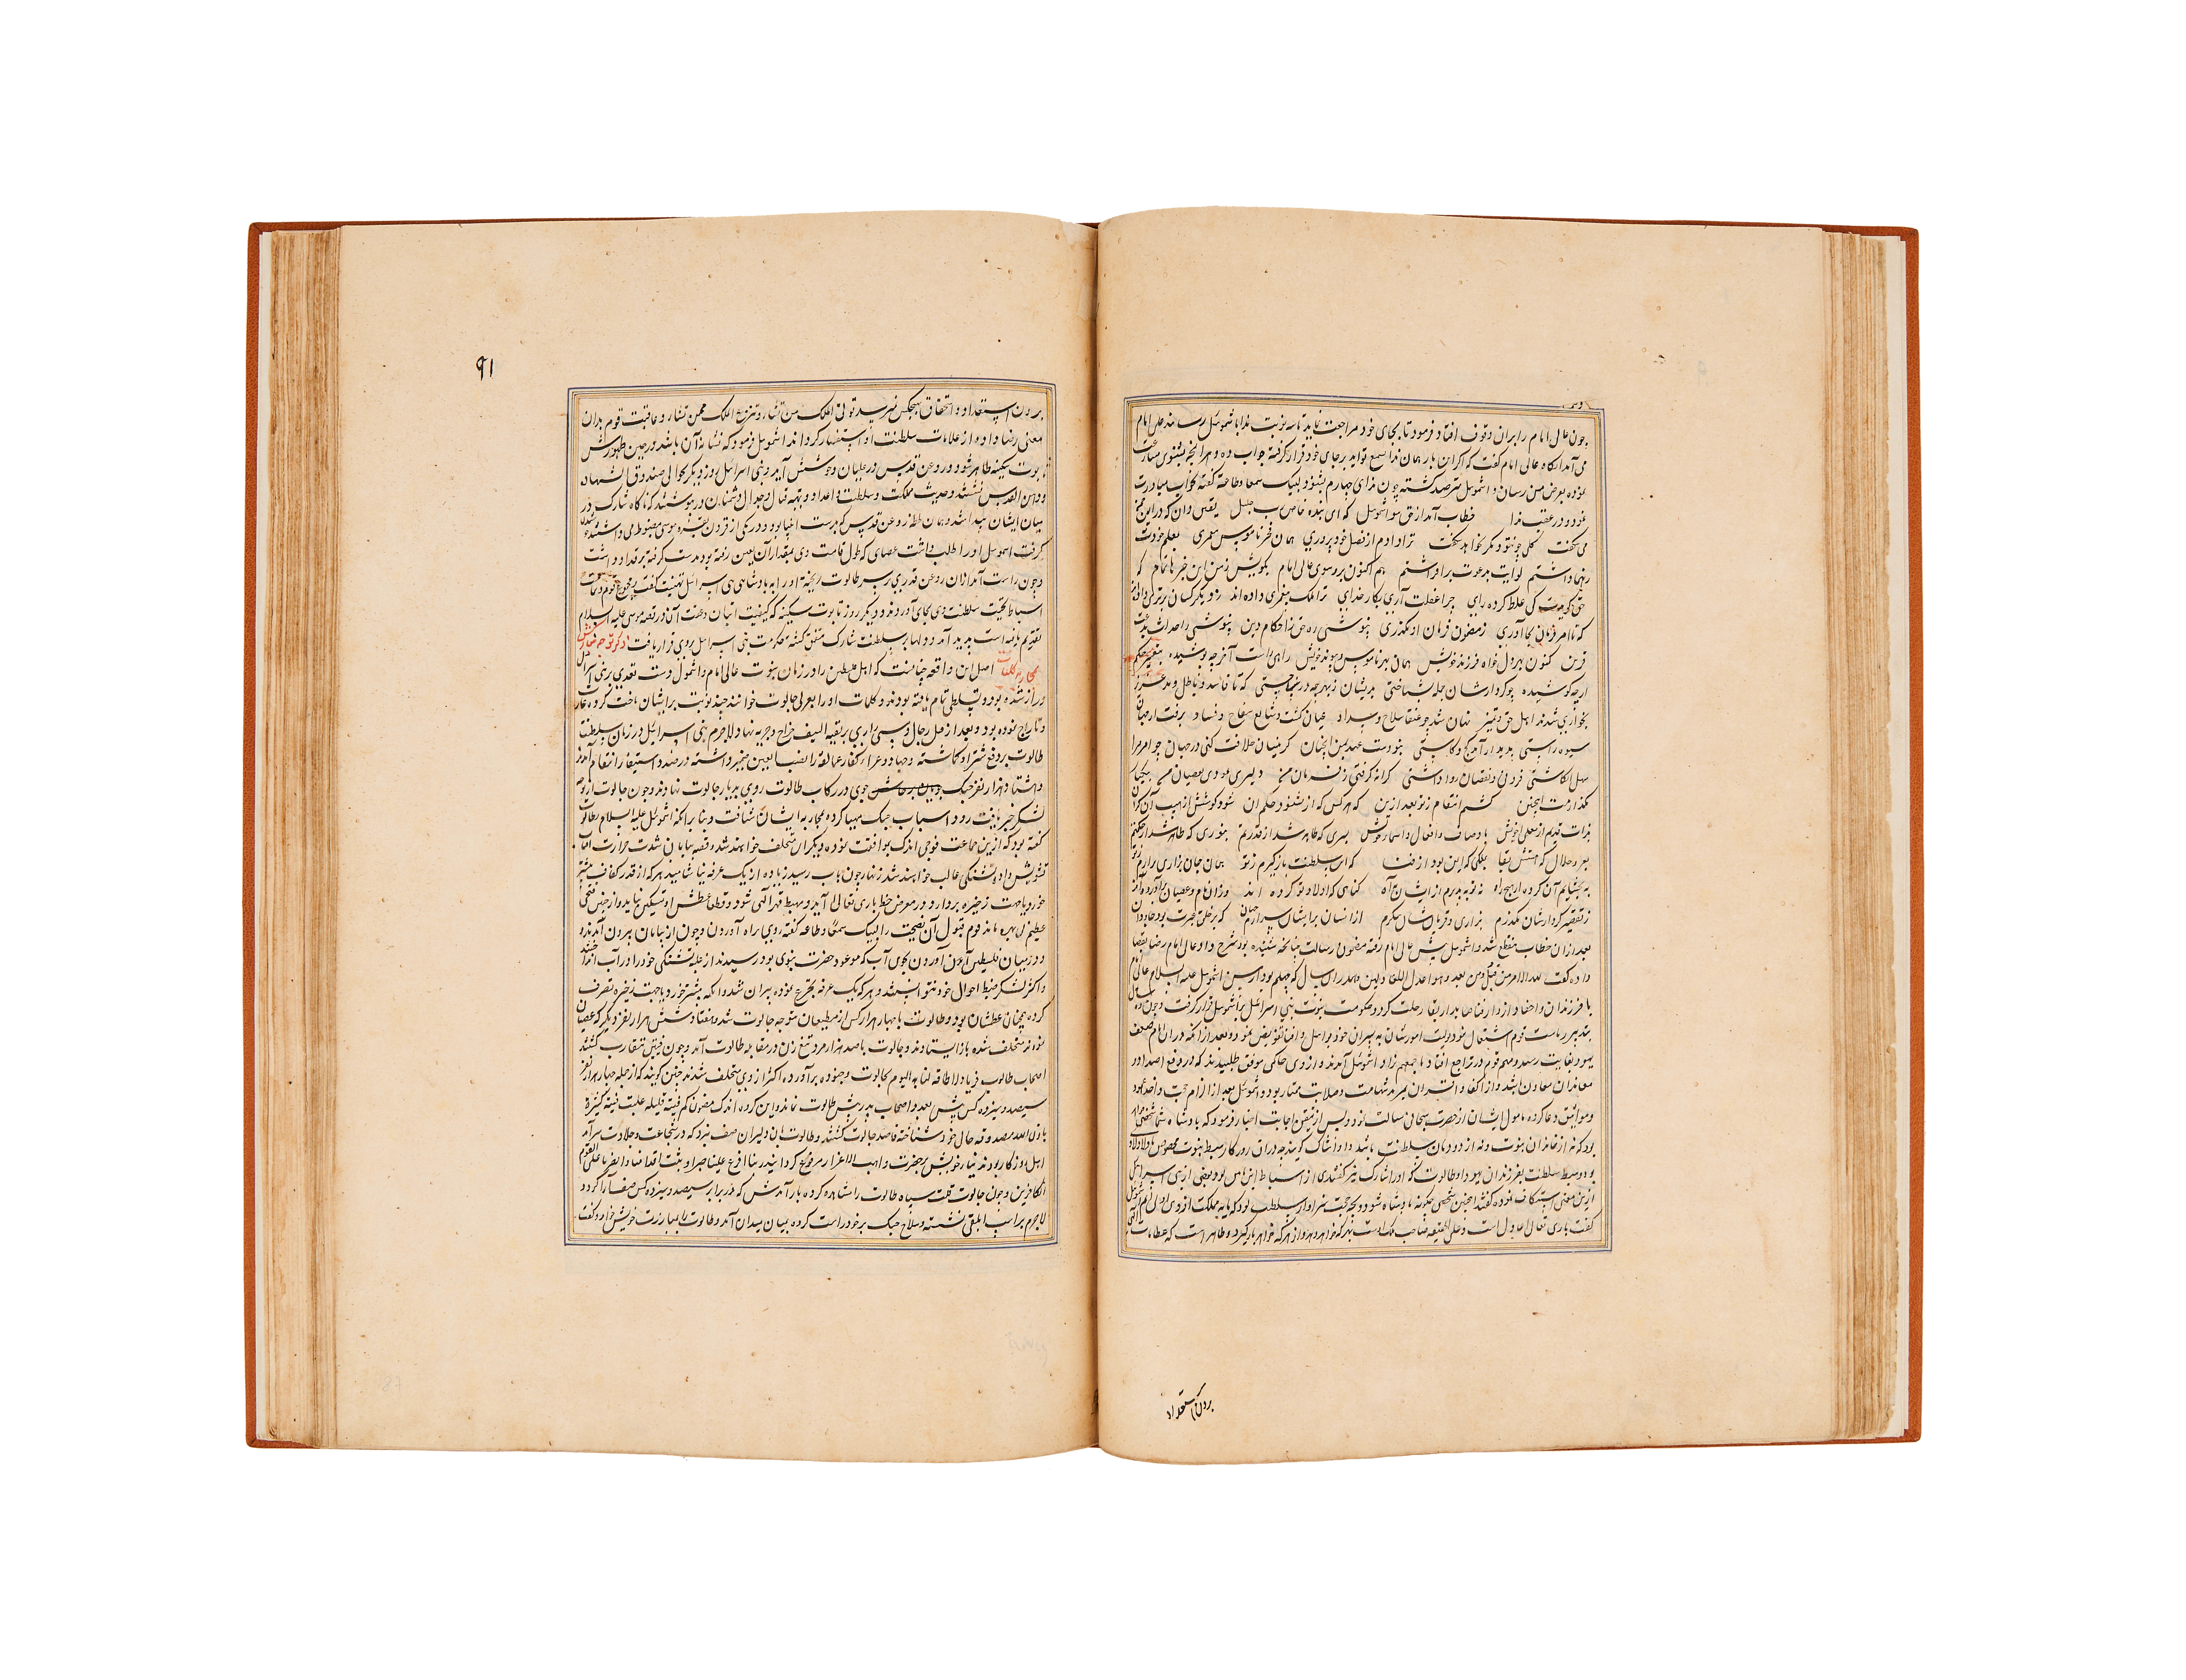 RAWDAT AL-SAFA (TARIH I MIR KHWAND) MUHAMMAD BIN KHAWAND SHAH MIR KHAWAND DATED 1498AD - Image 5 of 9